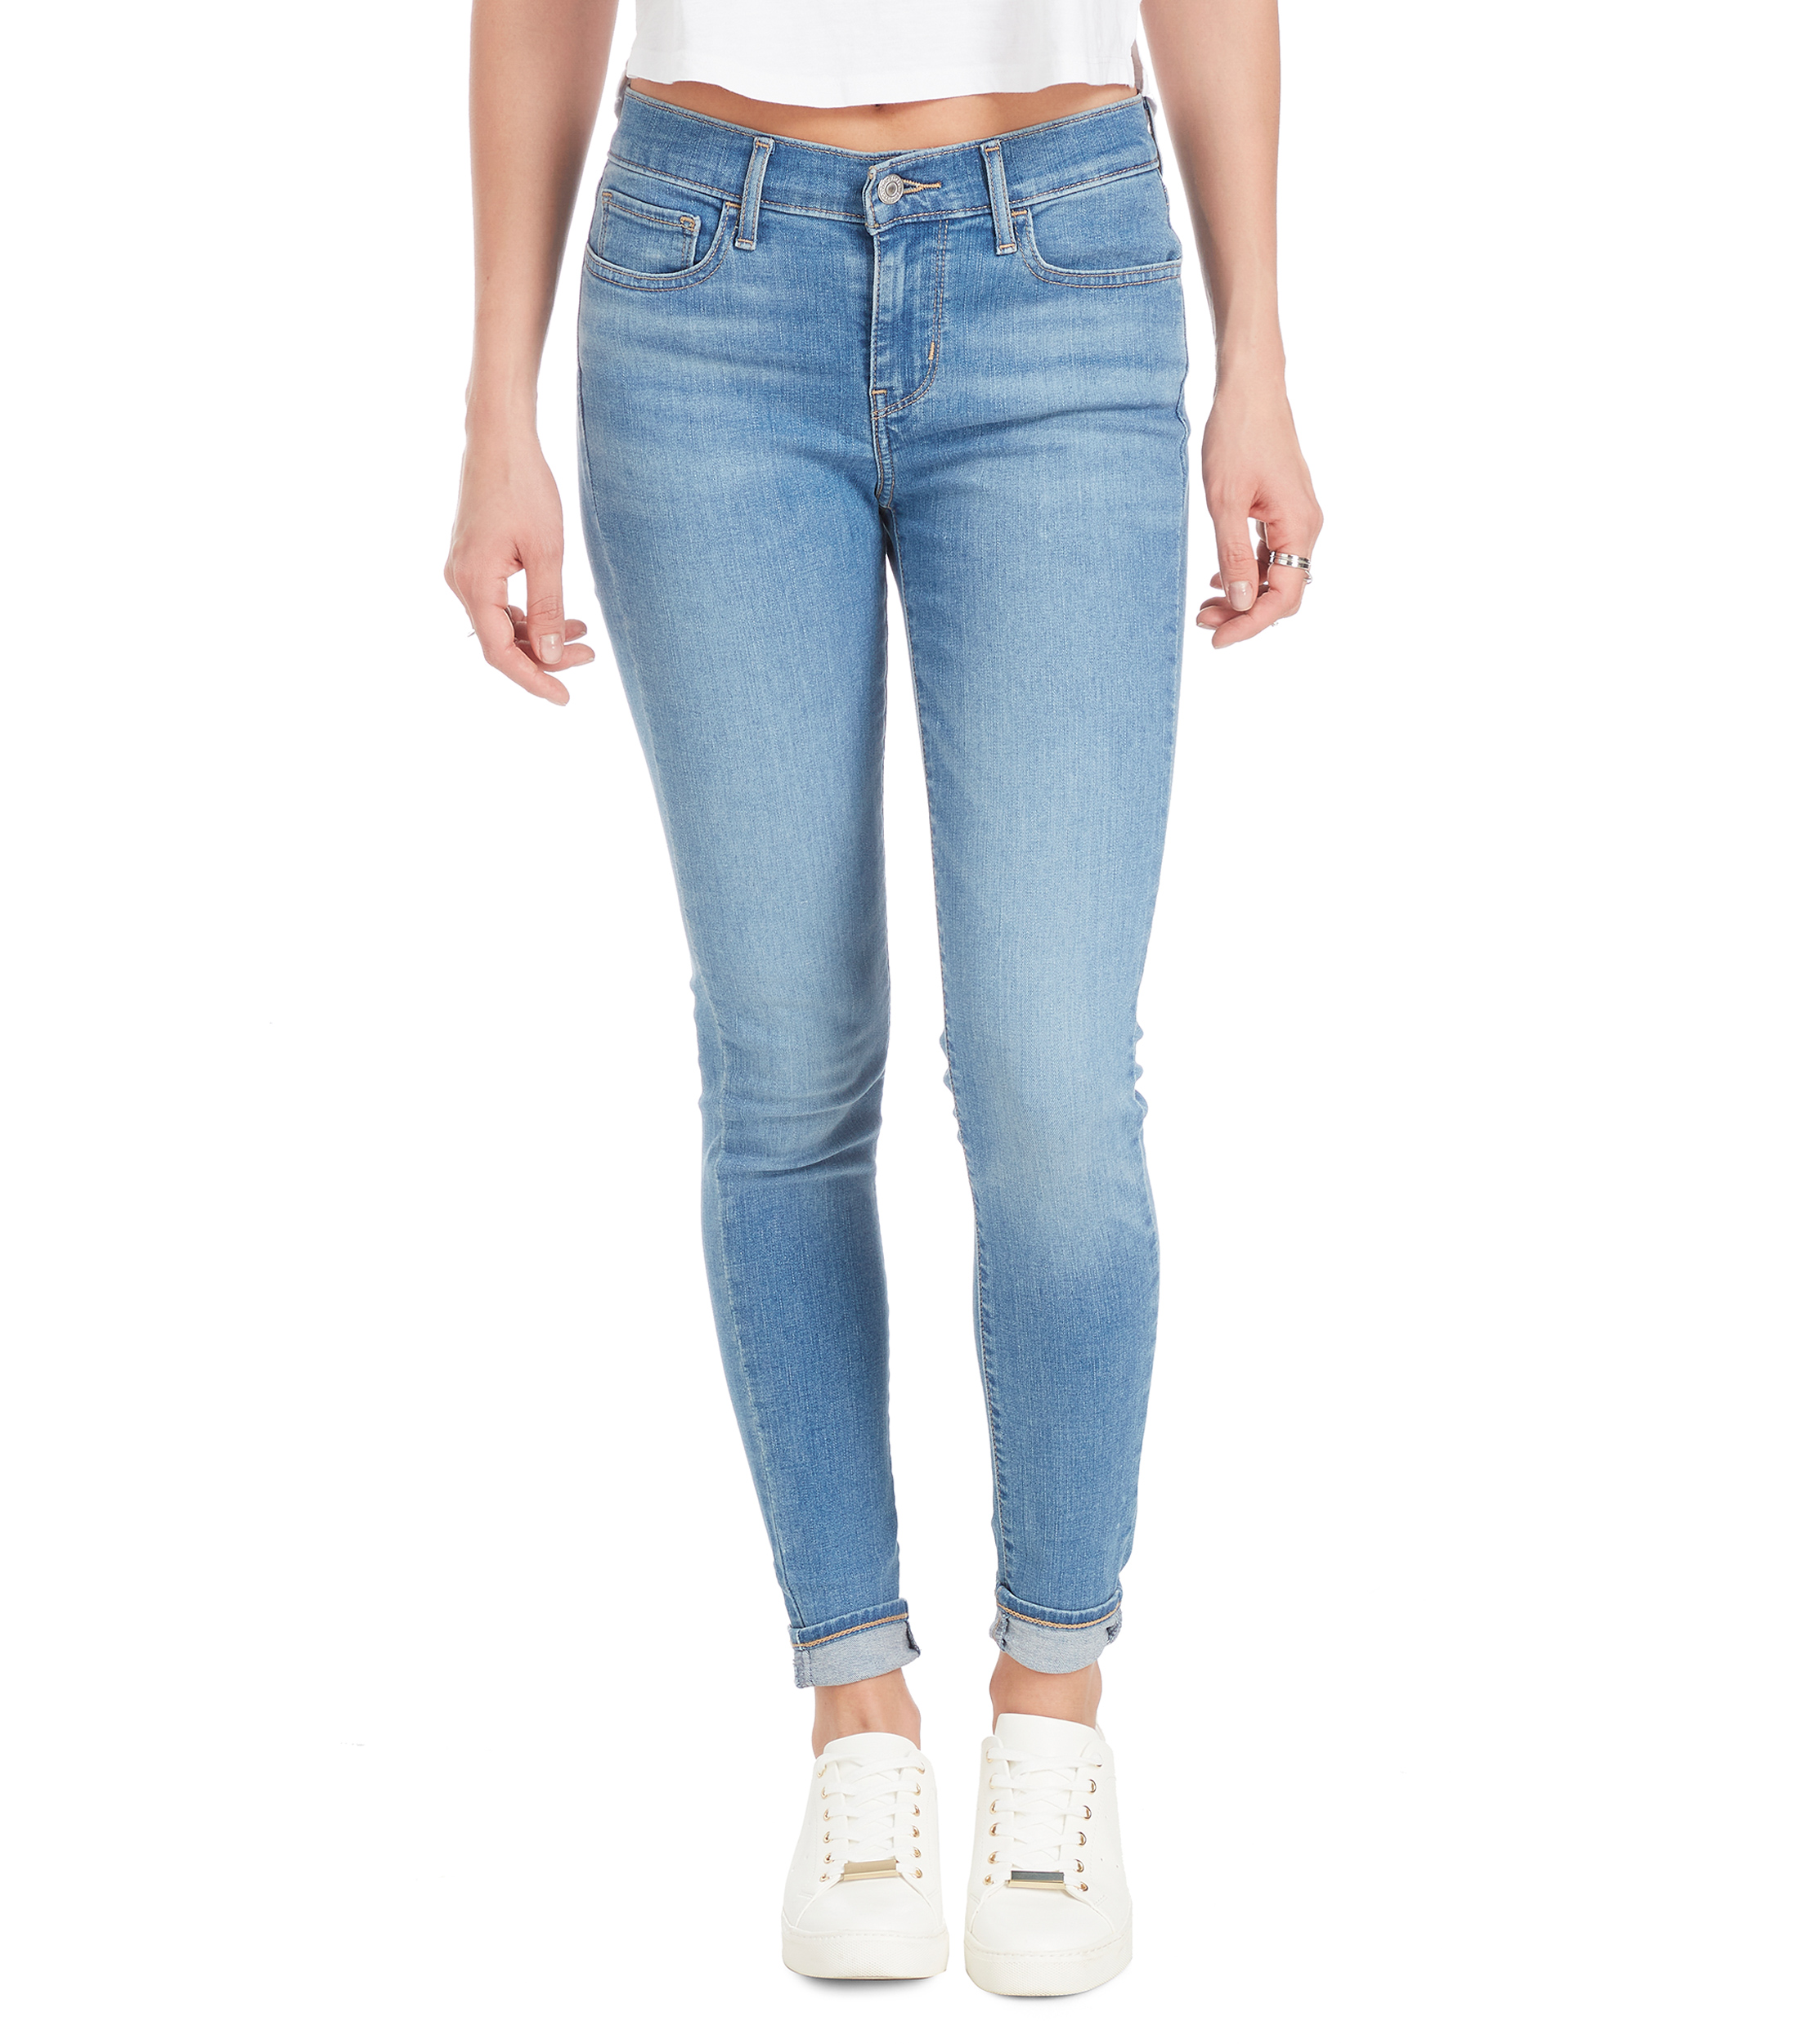 Confiar Margarita Productivo Levi's: Jeans 710 Super Skinny Mujer | El Palacio de Hierro